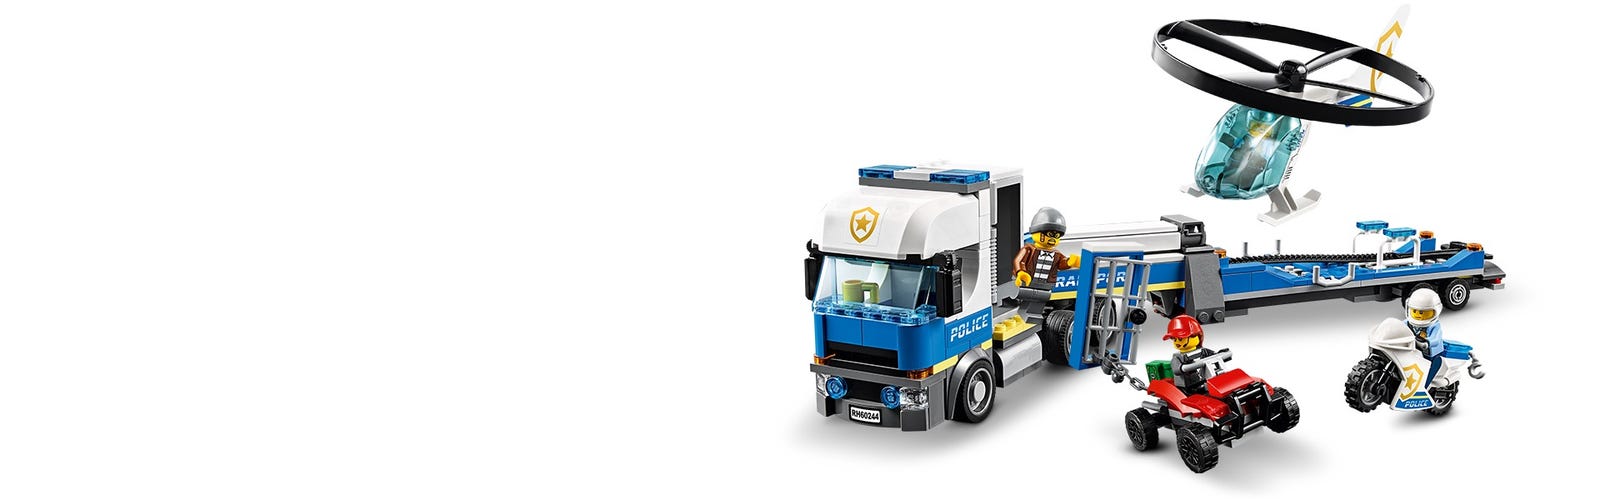 Trasportatore di elicotteri della polizia 60244 | City | LEGO® Shop  ufficiale IT